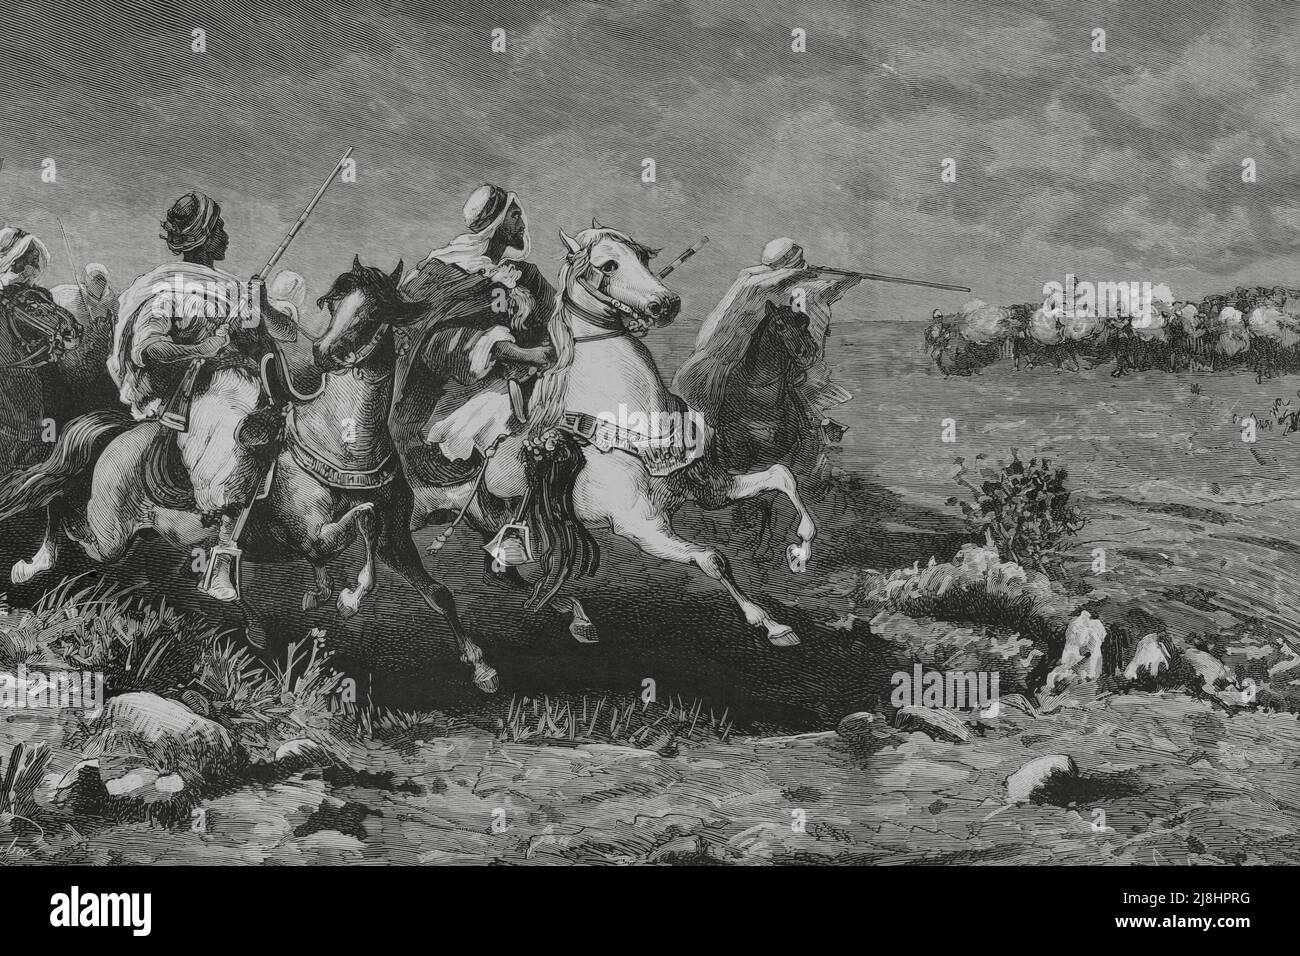 Occupazione inglese dell'Egitto, 1882. Popolazione di Tel-el-Kebir (basso Egitto). Cavalieri beduini che attaccano gli avamposti britannici. Incisione di Capuz, 1882. Foto Stock